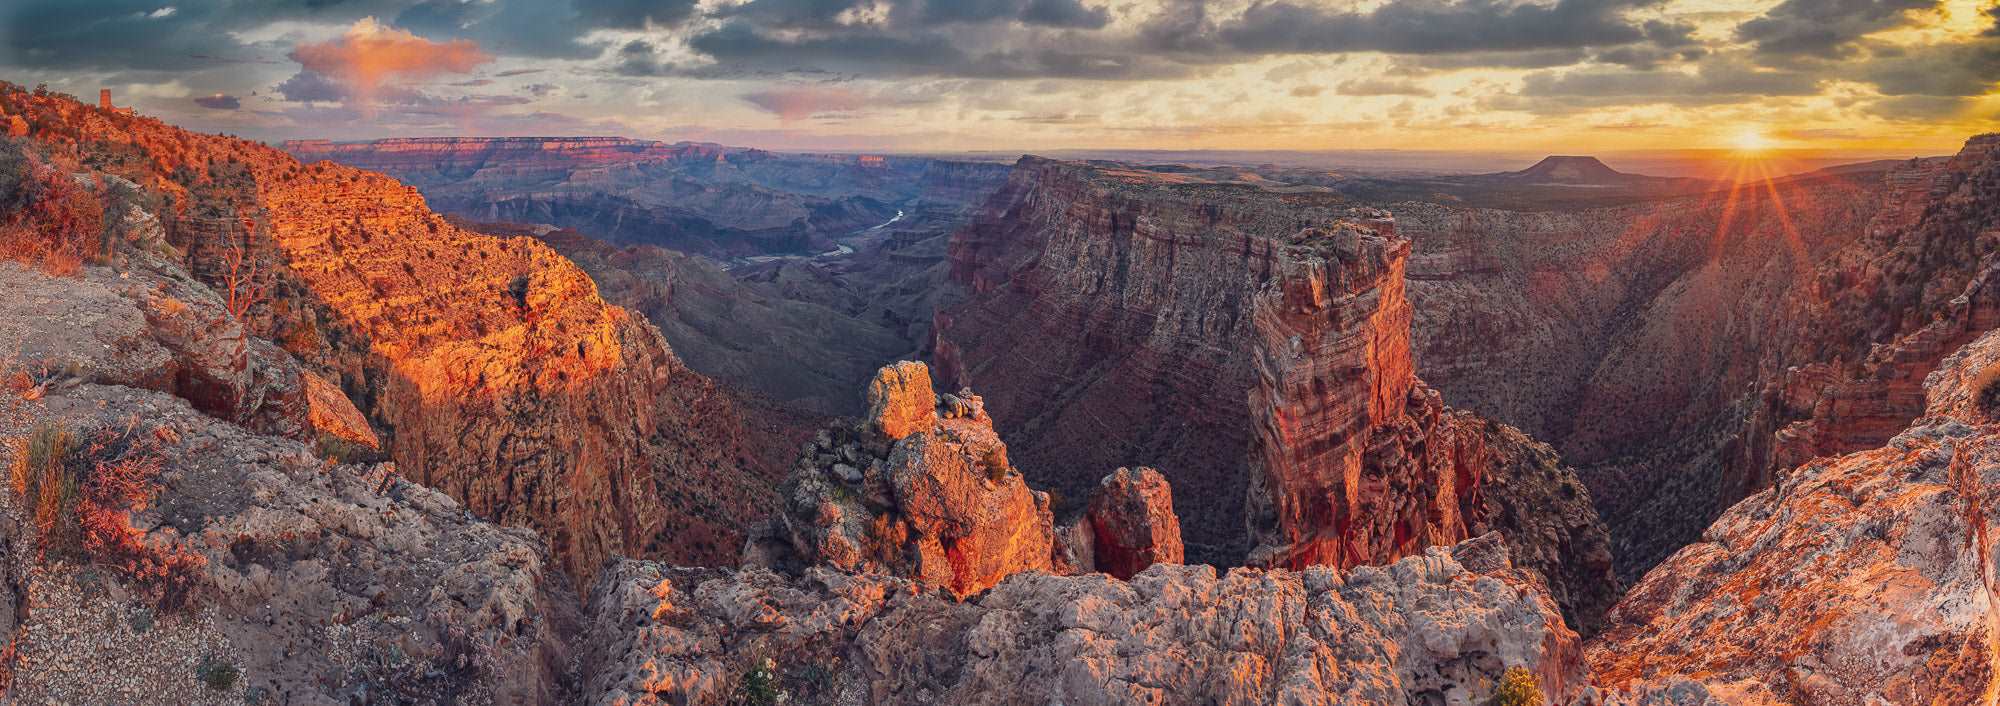 Desert's Symphony: Grand Canyon Sunrise Reverie - Stephen Milner